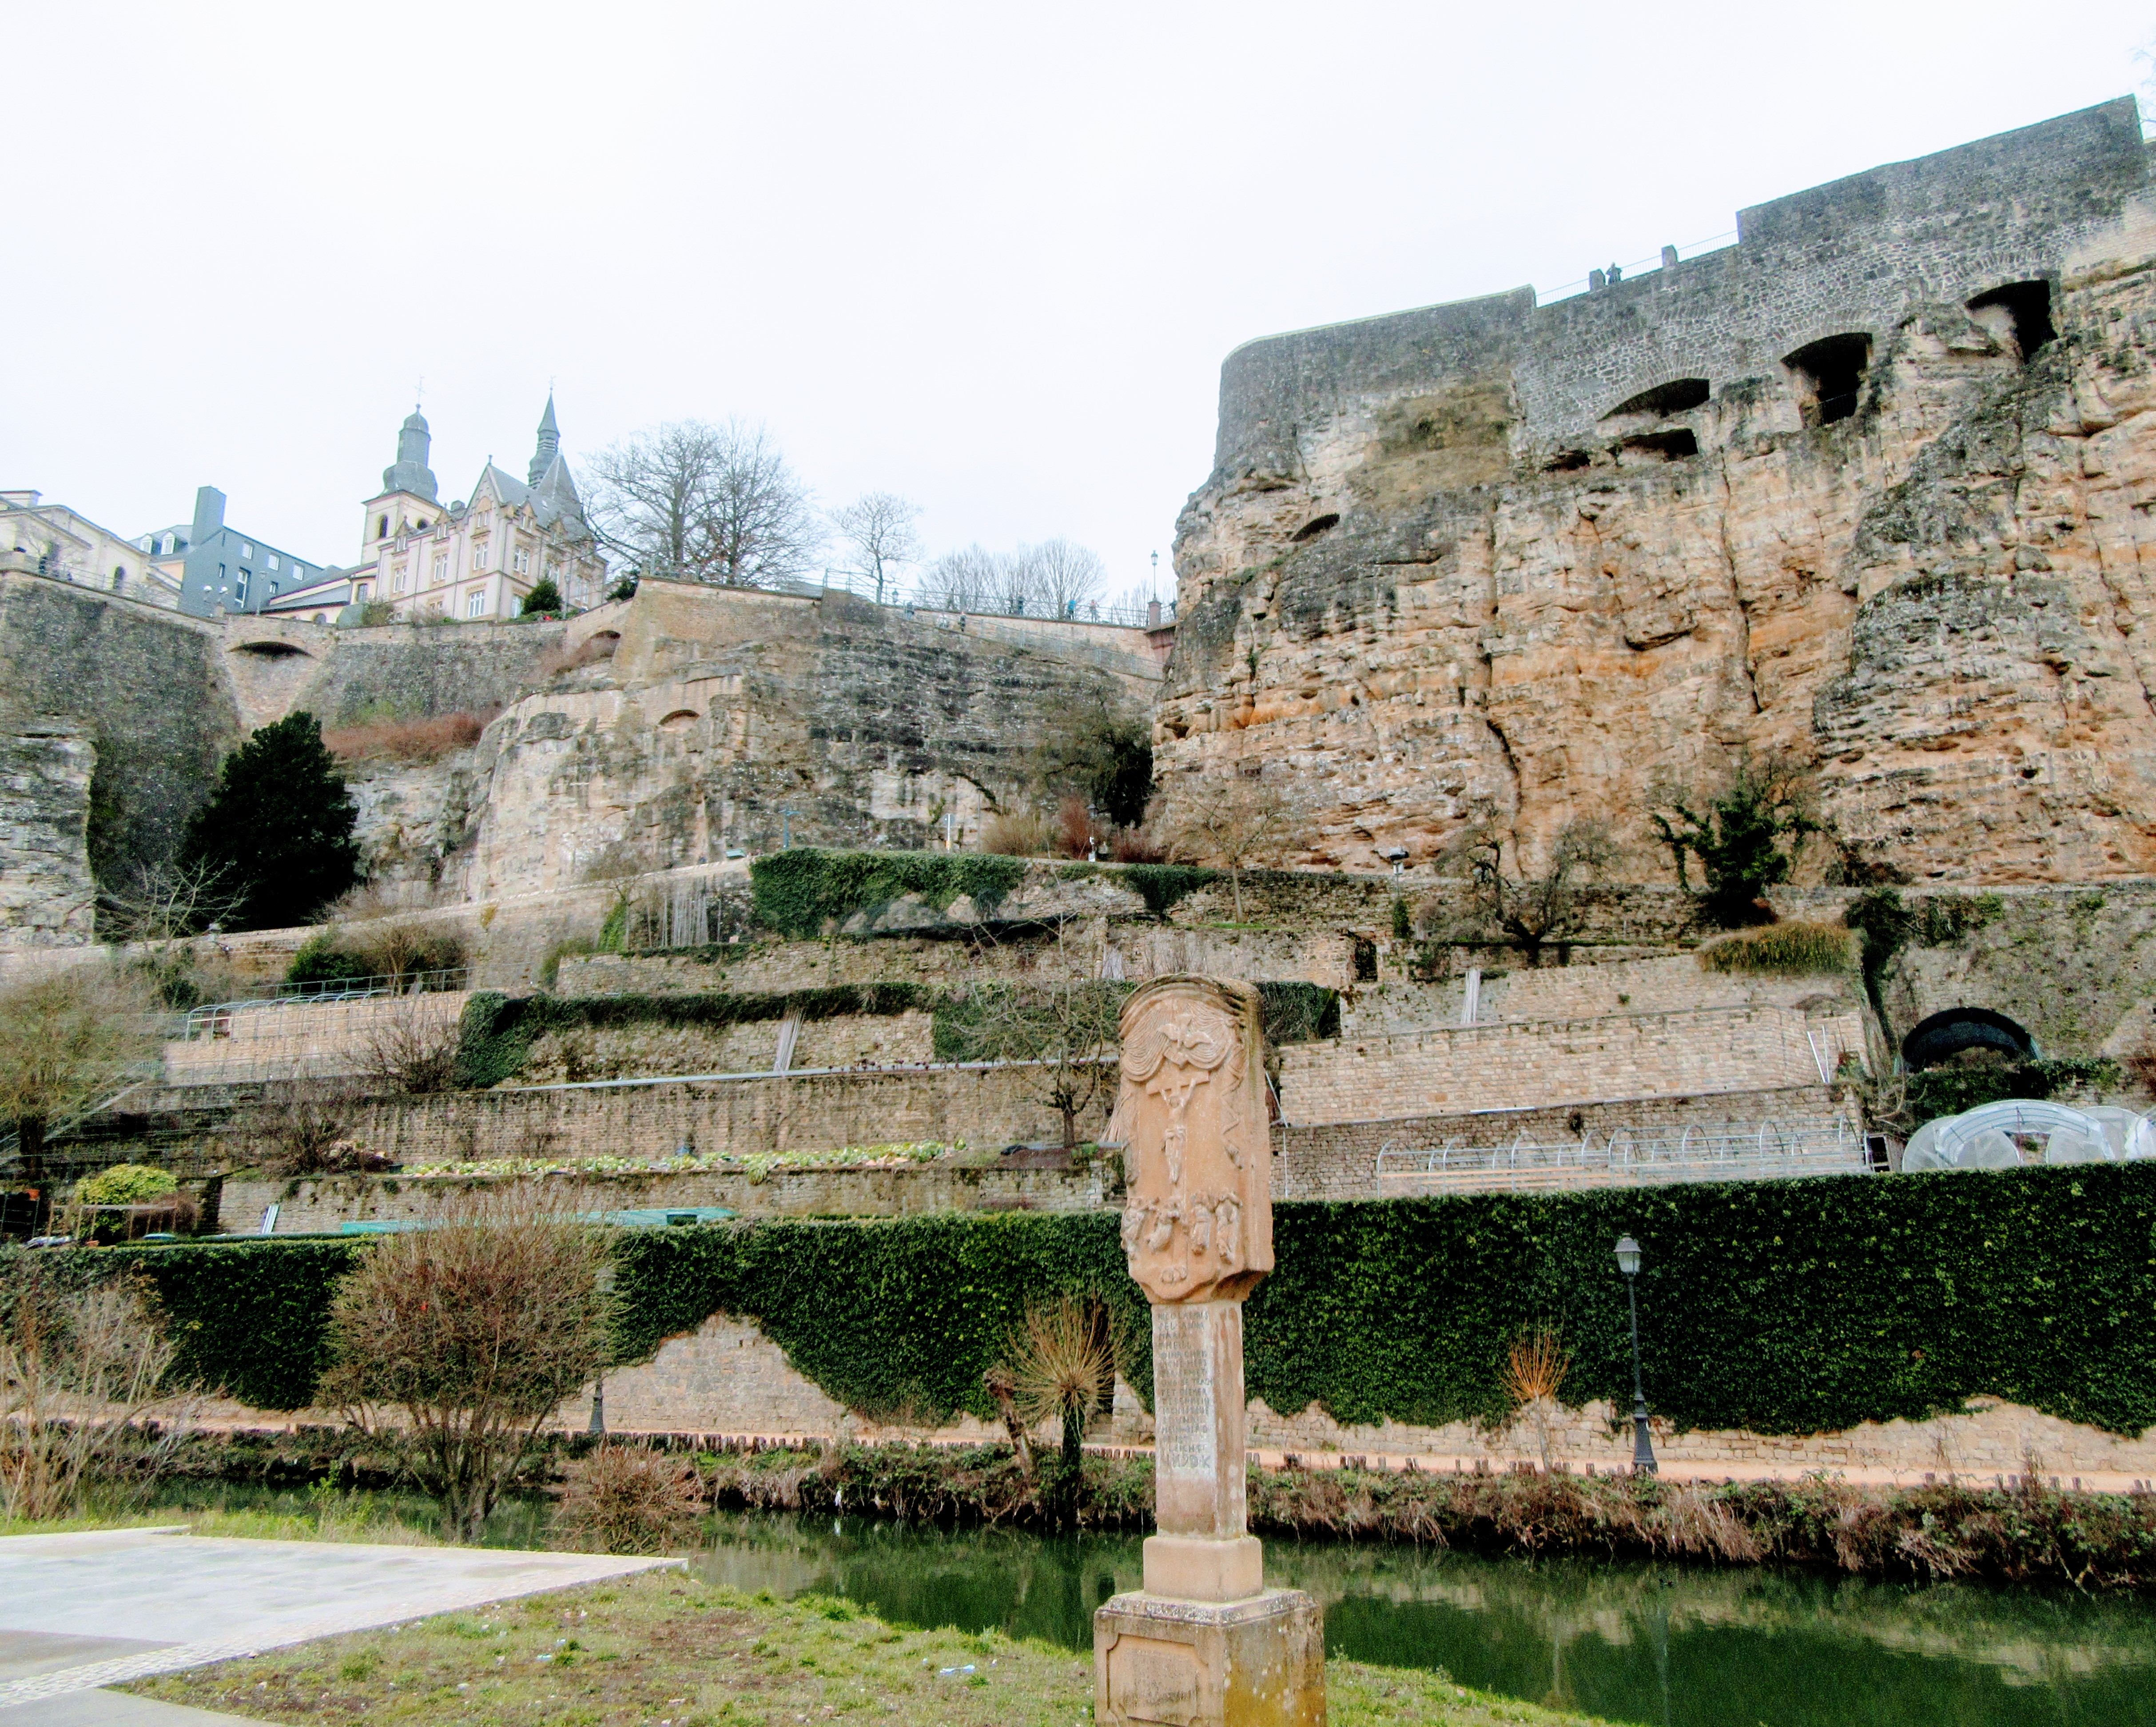 Казематы - многокилометровые тоннели, высеченные в скалистых естественных укреплениях для защиты крепости Люксембург